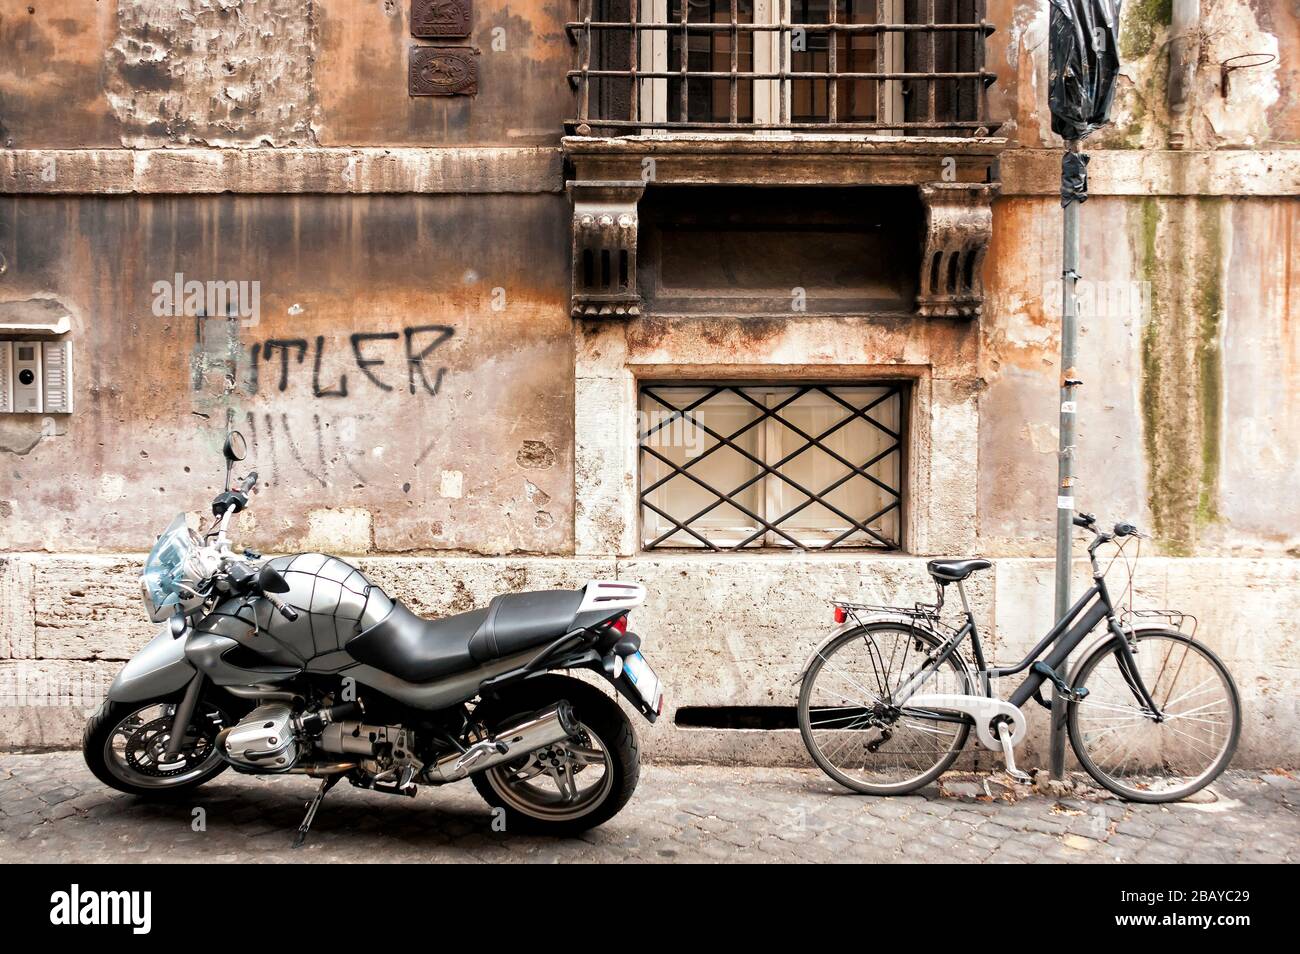 Ein Motorrad, Fahrrad und ein anti-semitisches Graffiti auf einer Seitenstraße in Rom, Latium, Italien, Europa, Farbe Stockfoto